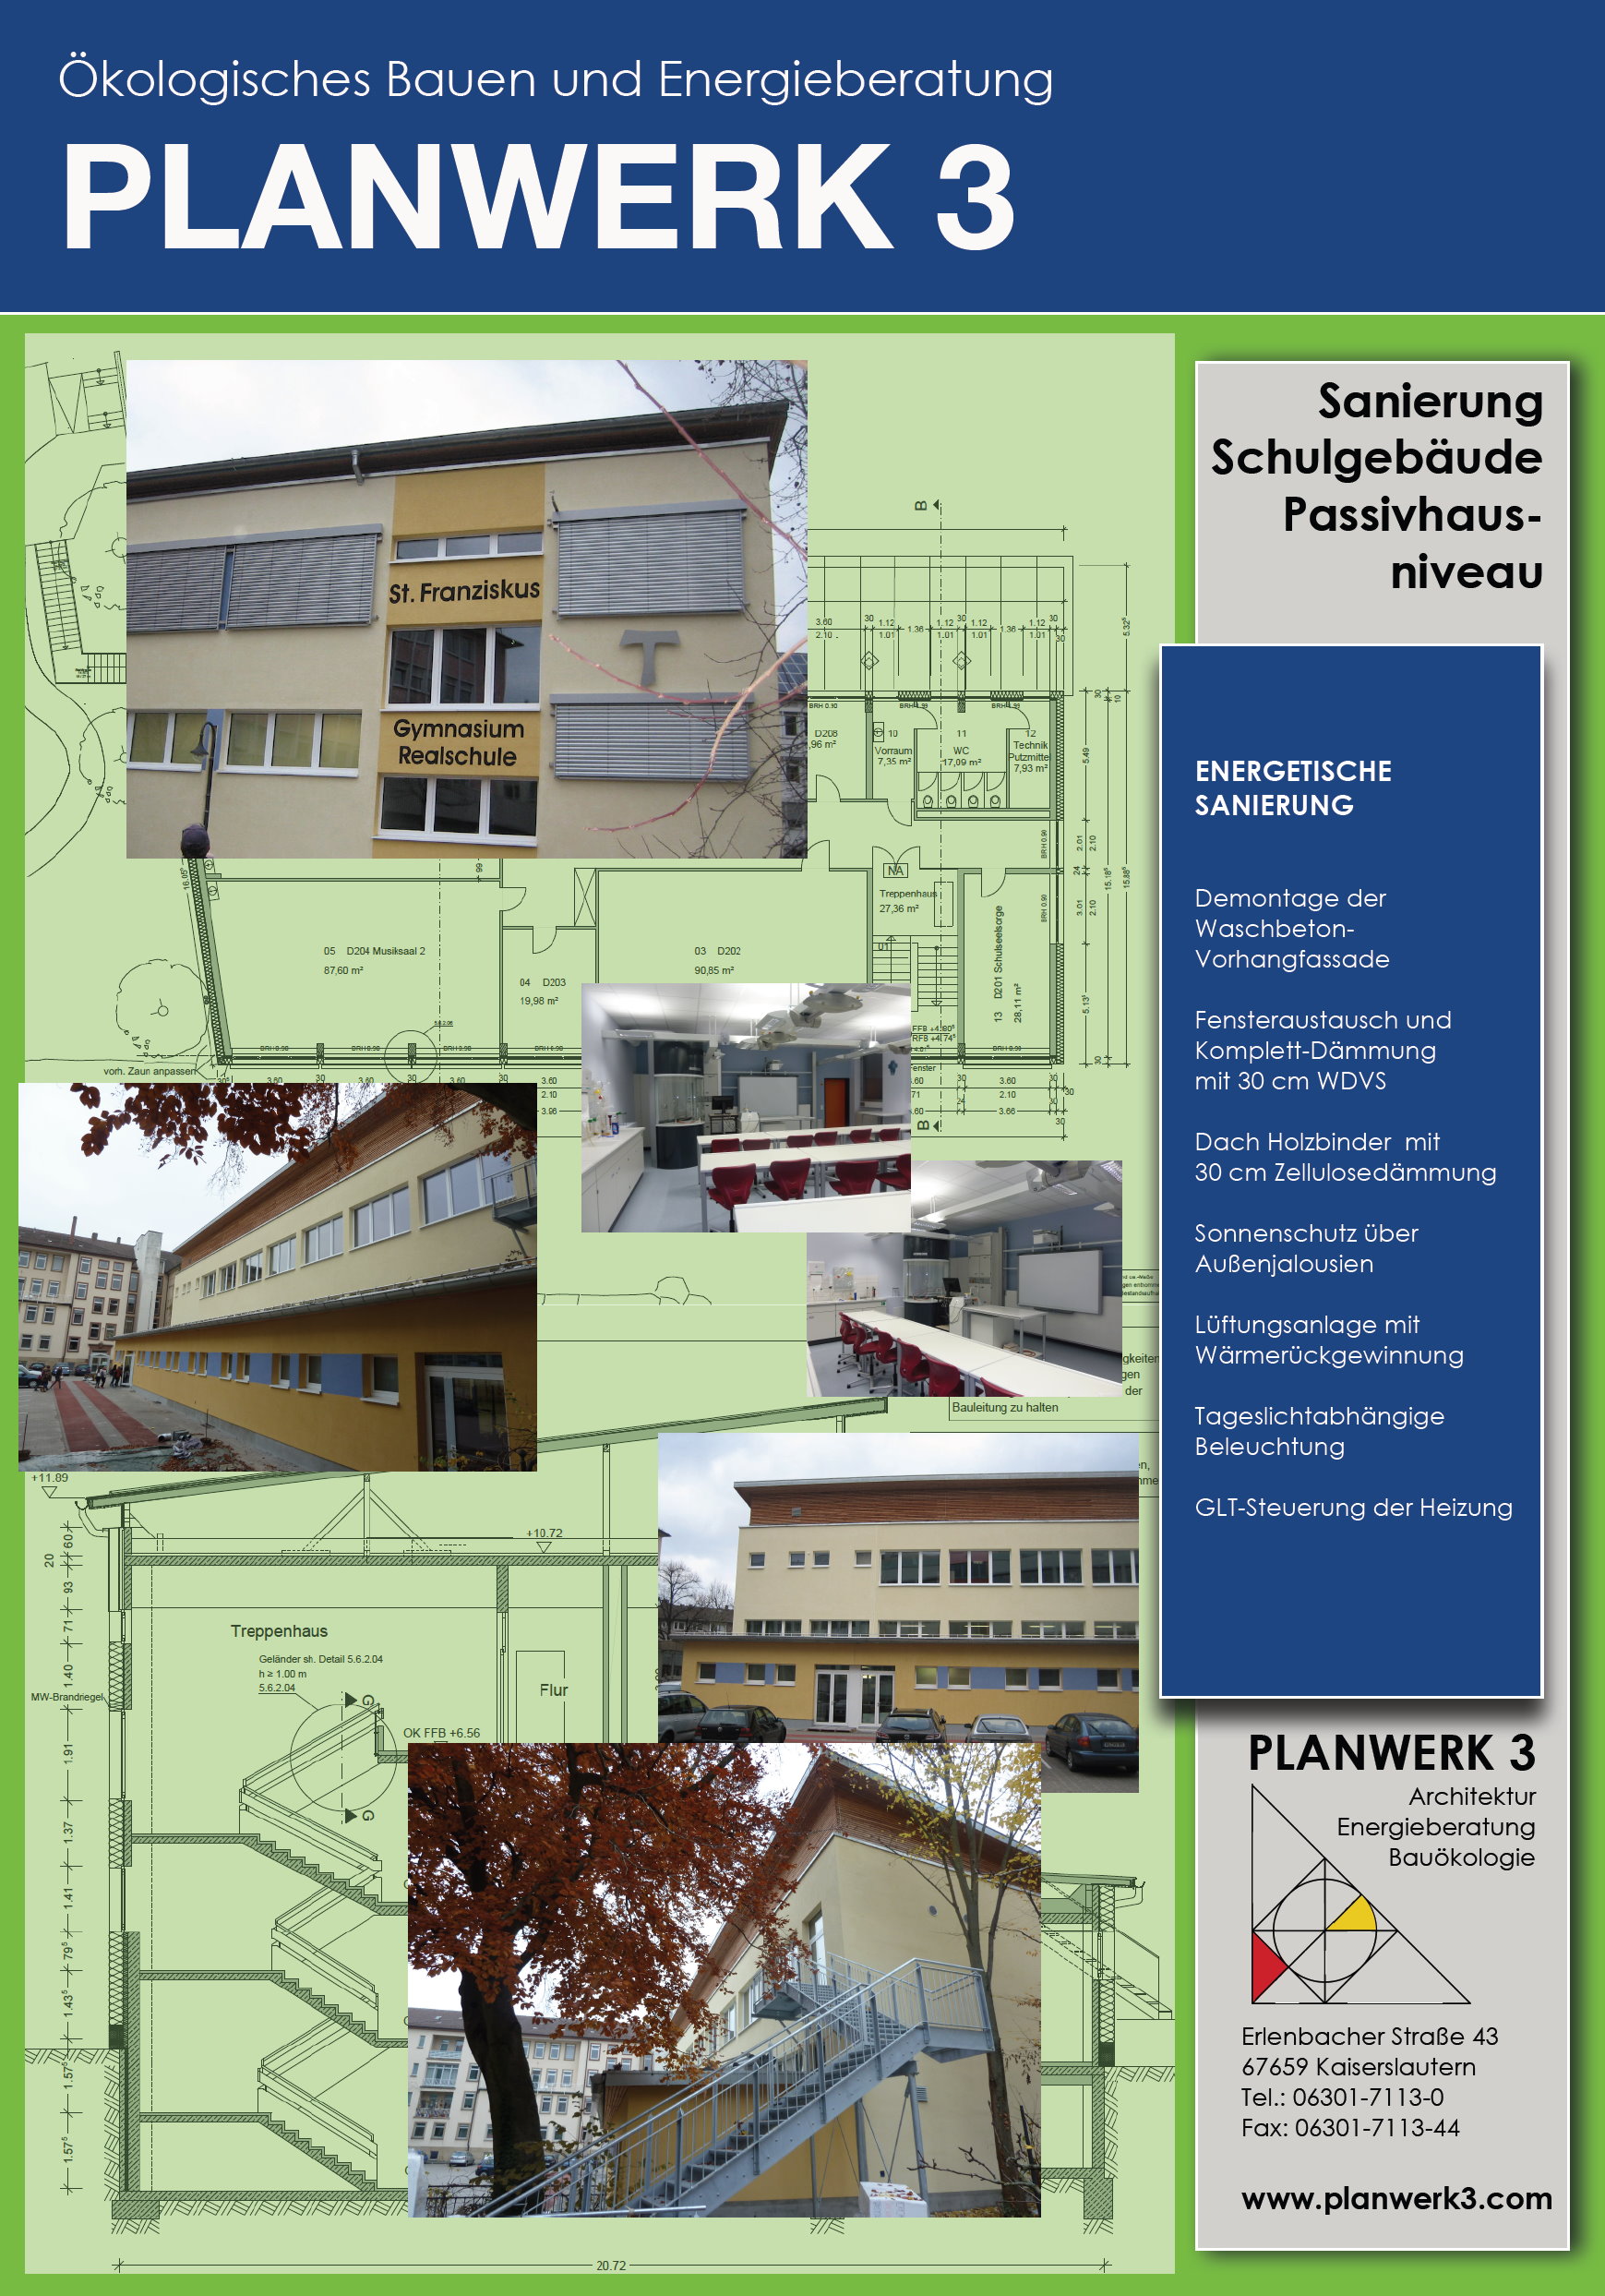 Passivhaus-Niveau, Sanierung Schulgebude, Kaiserslautern